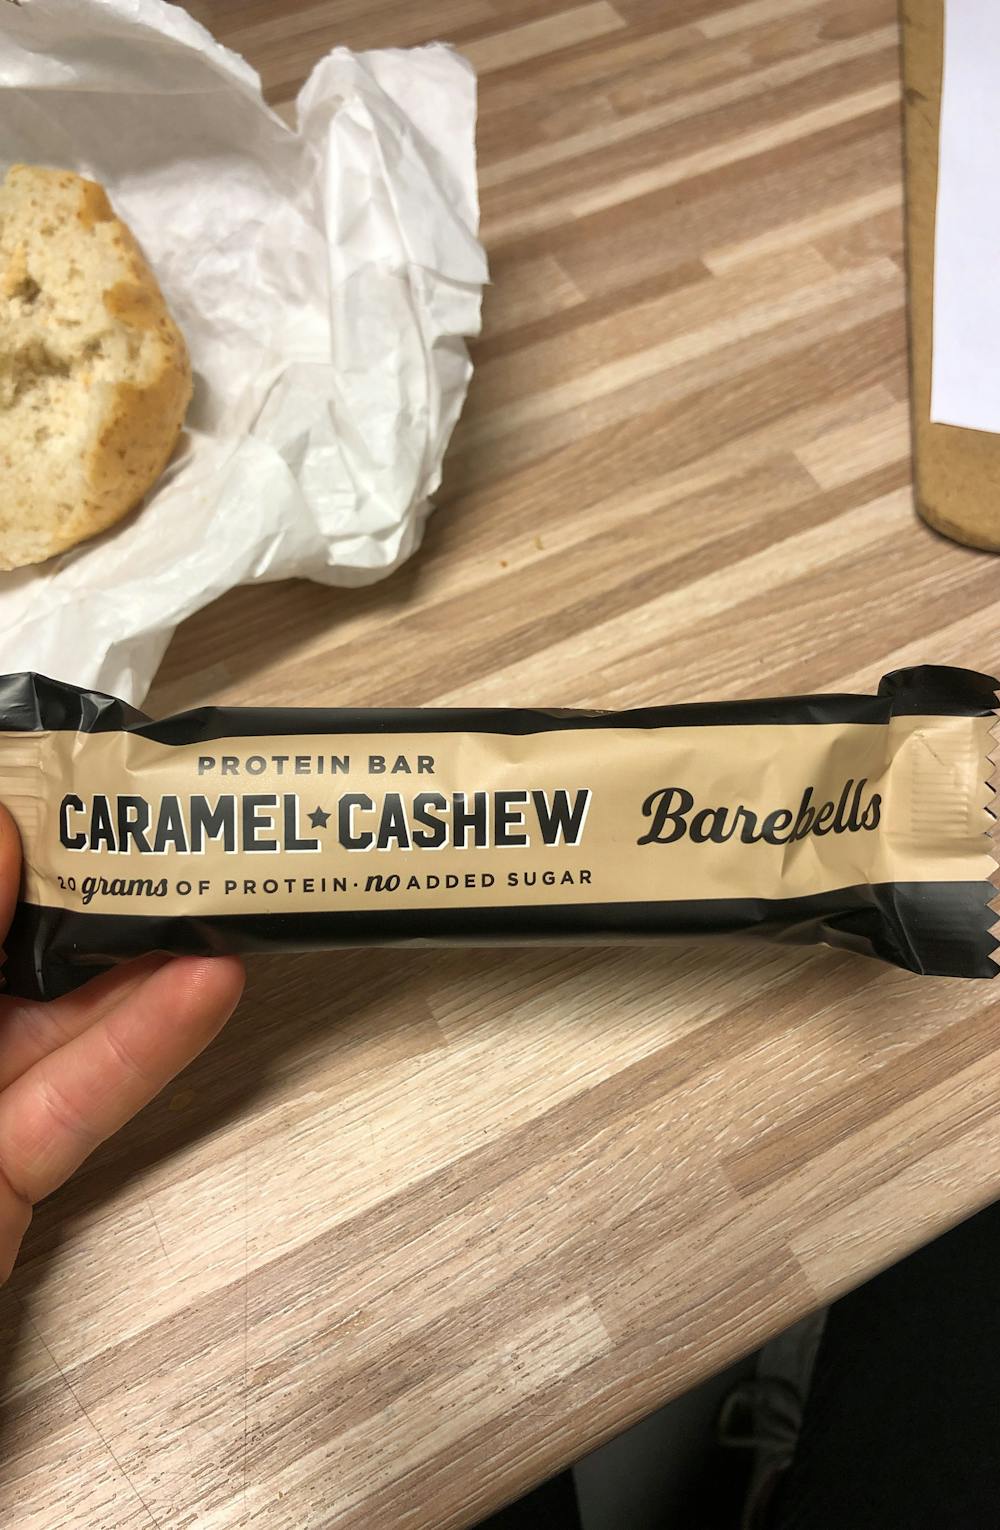 Caramel cashew protein bar, Barebells